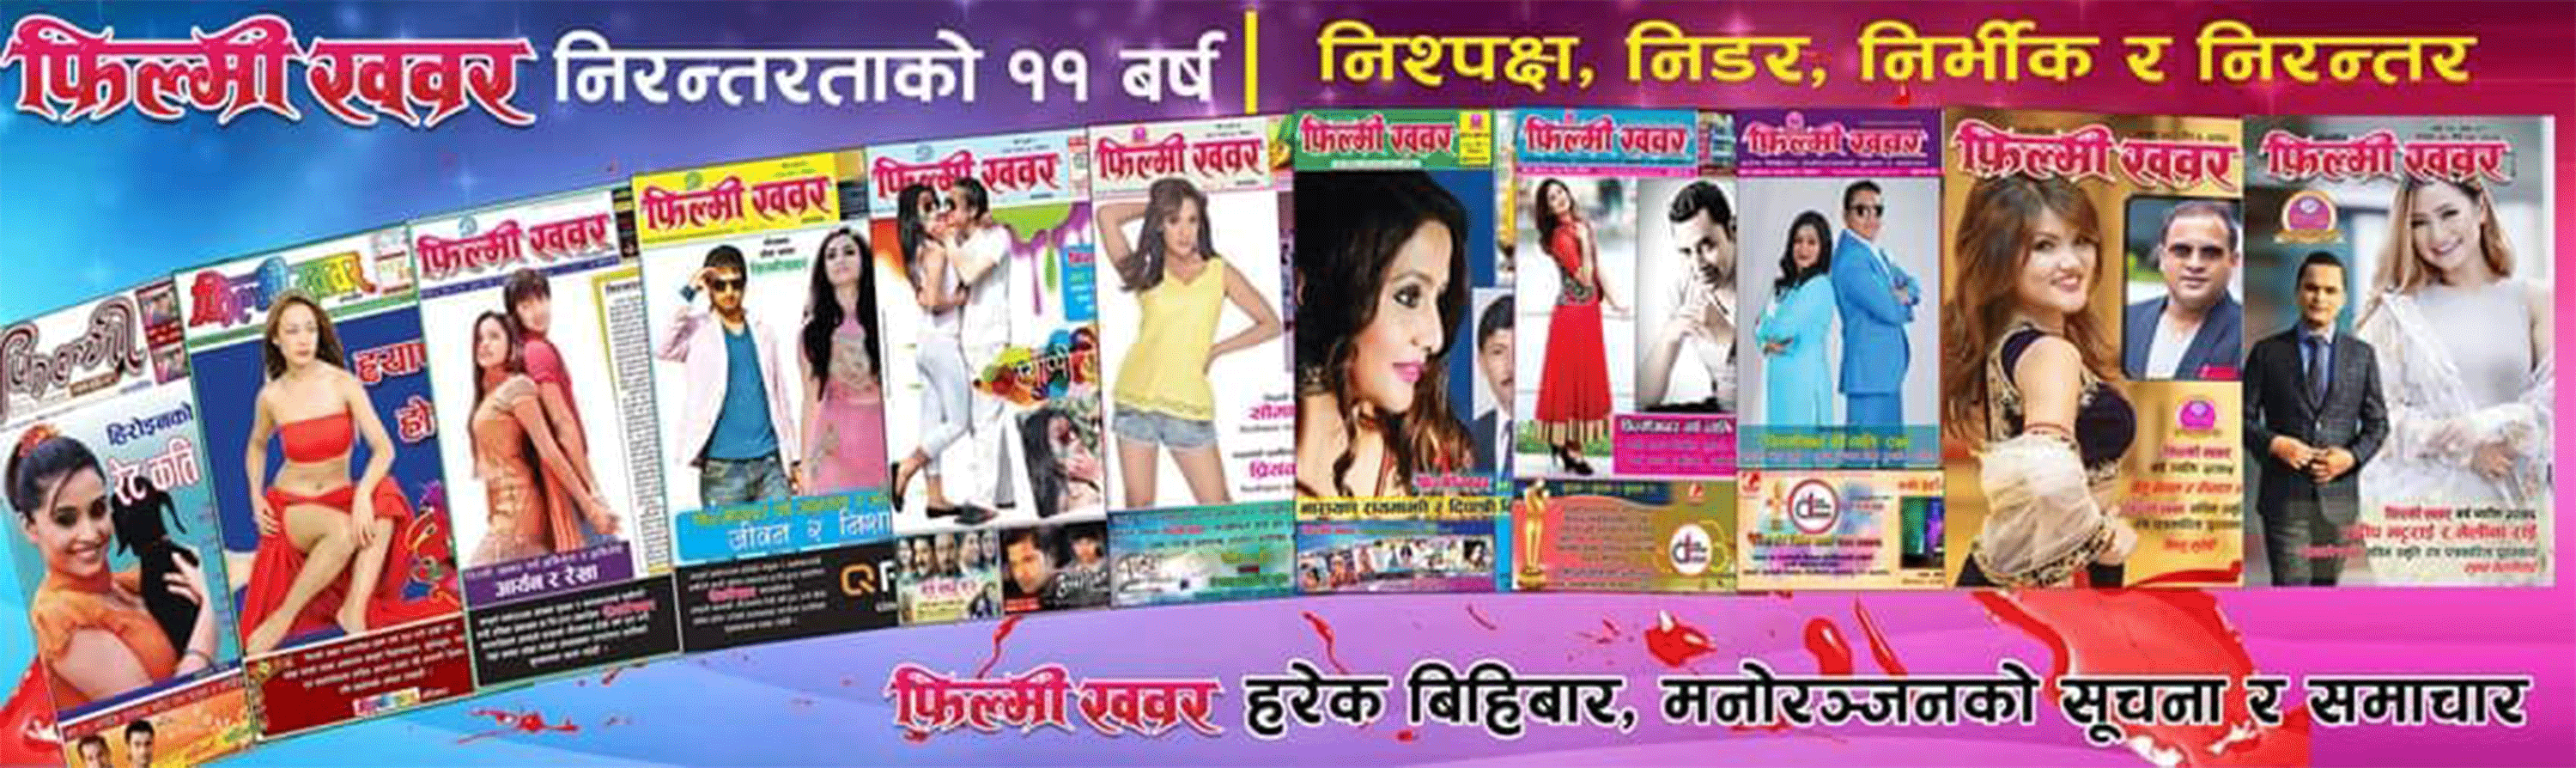 filmykhabar weekly